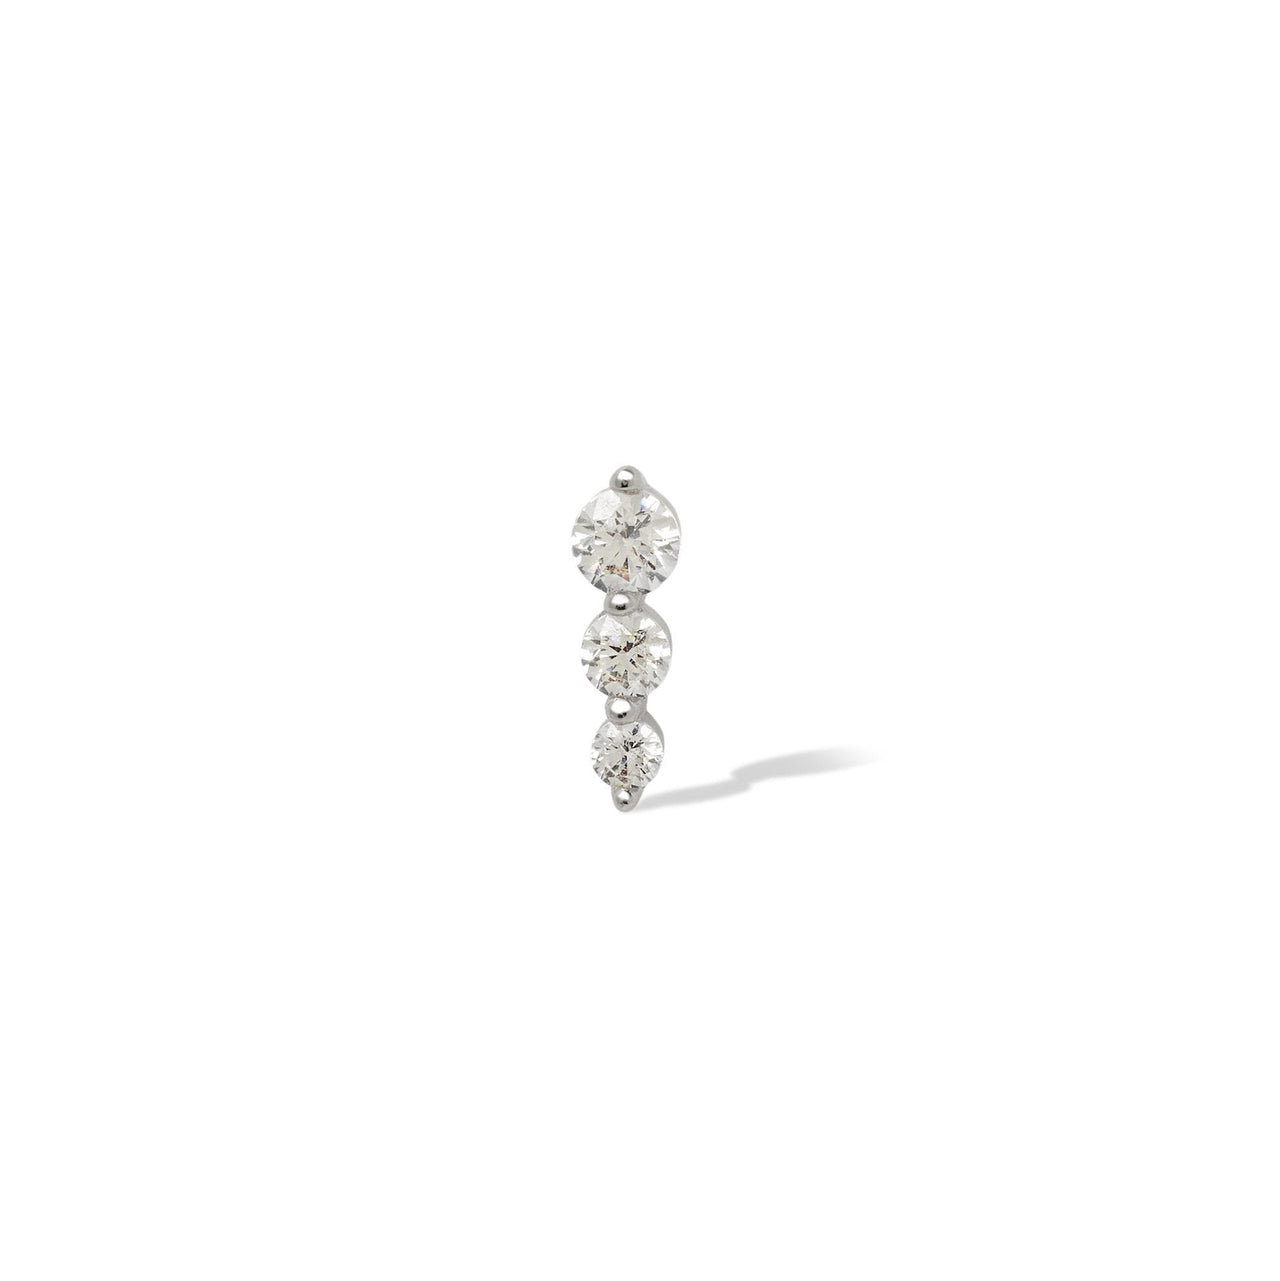 Single earring "True Love" triple dot sterling silver stud